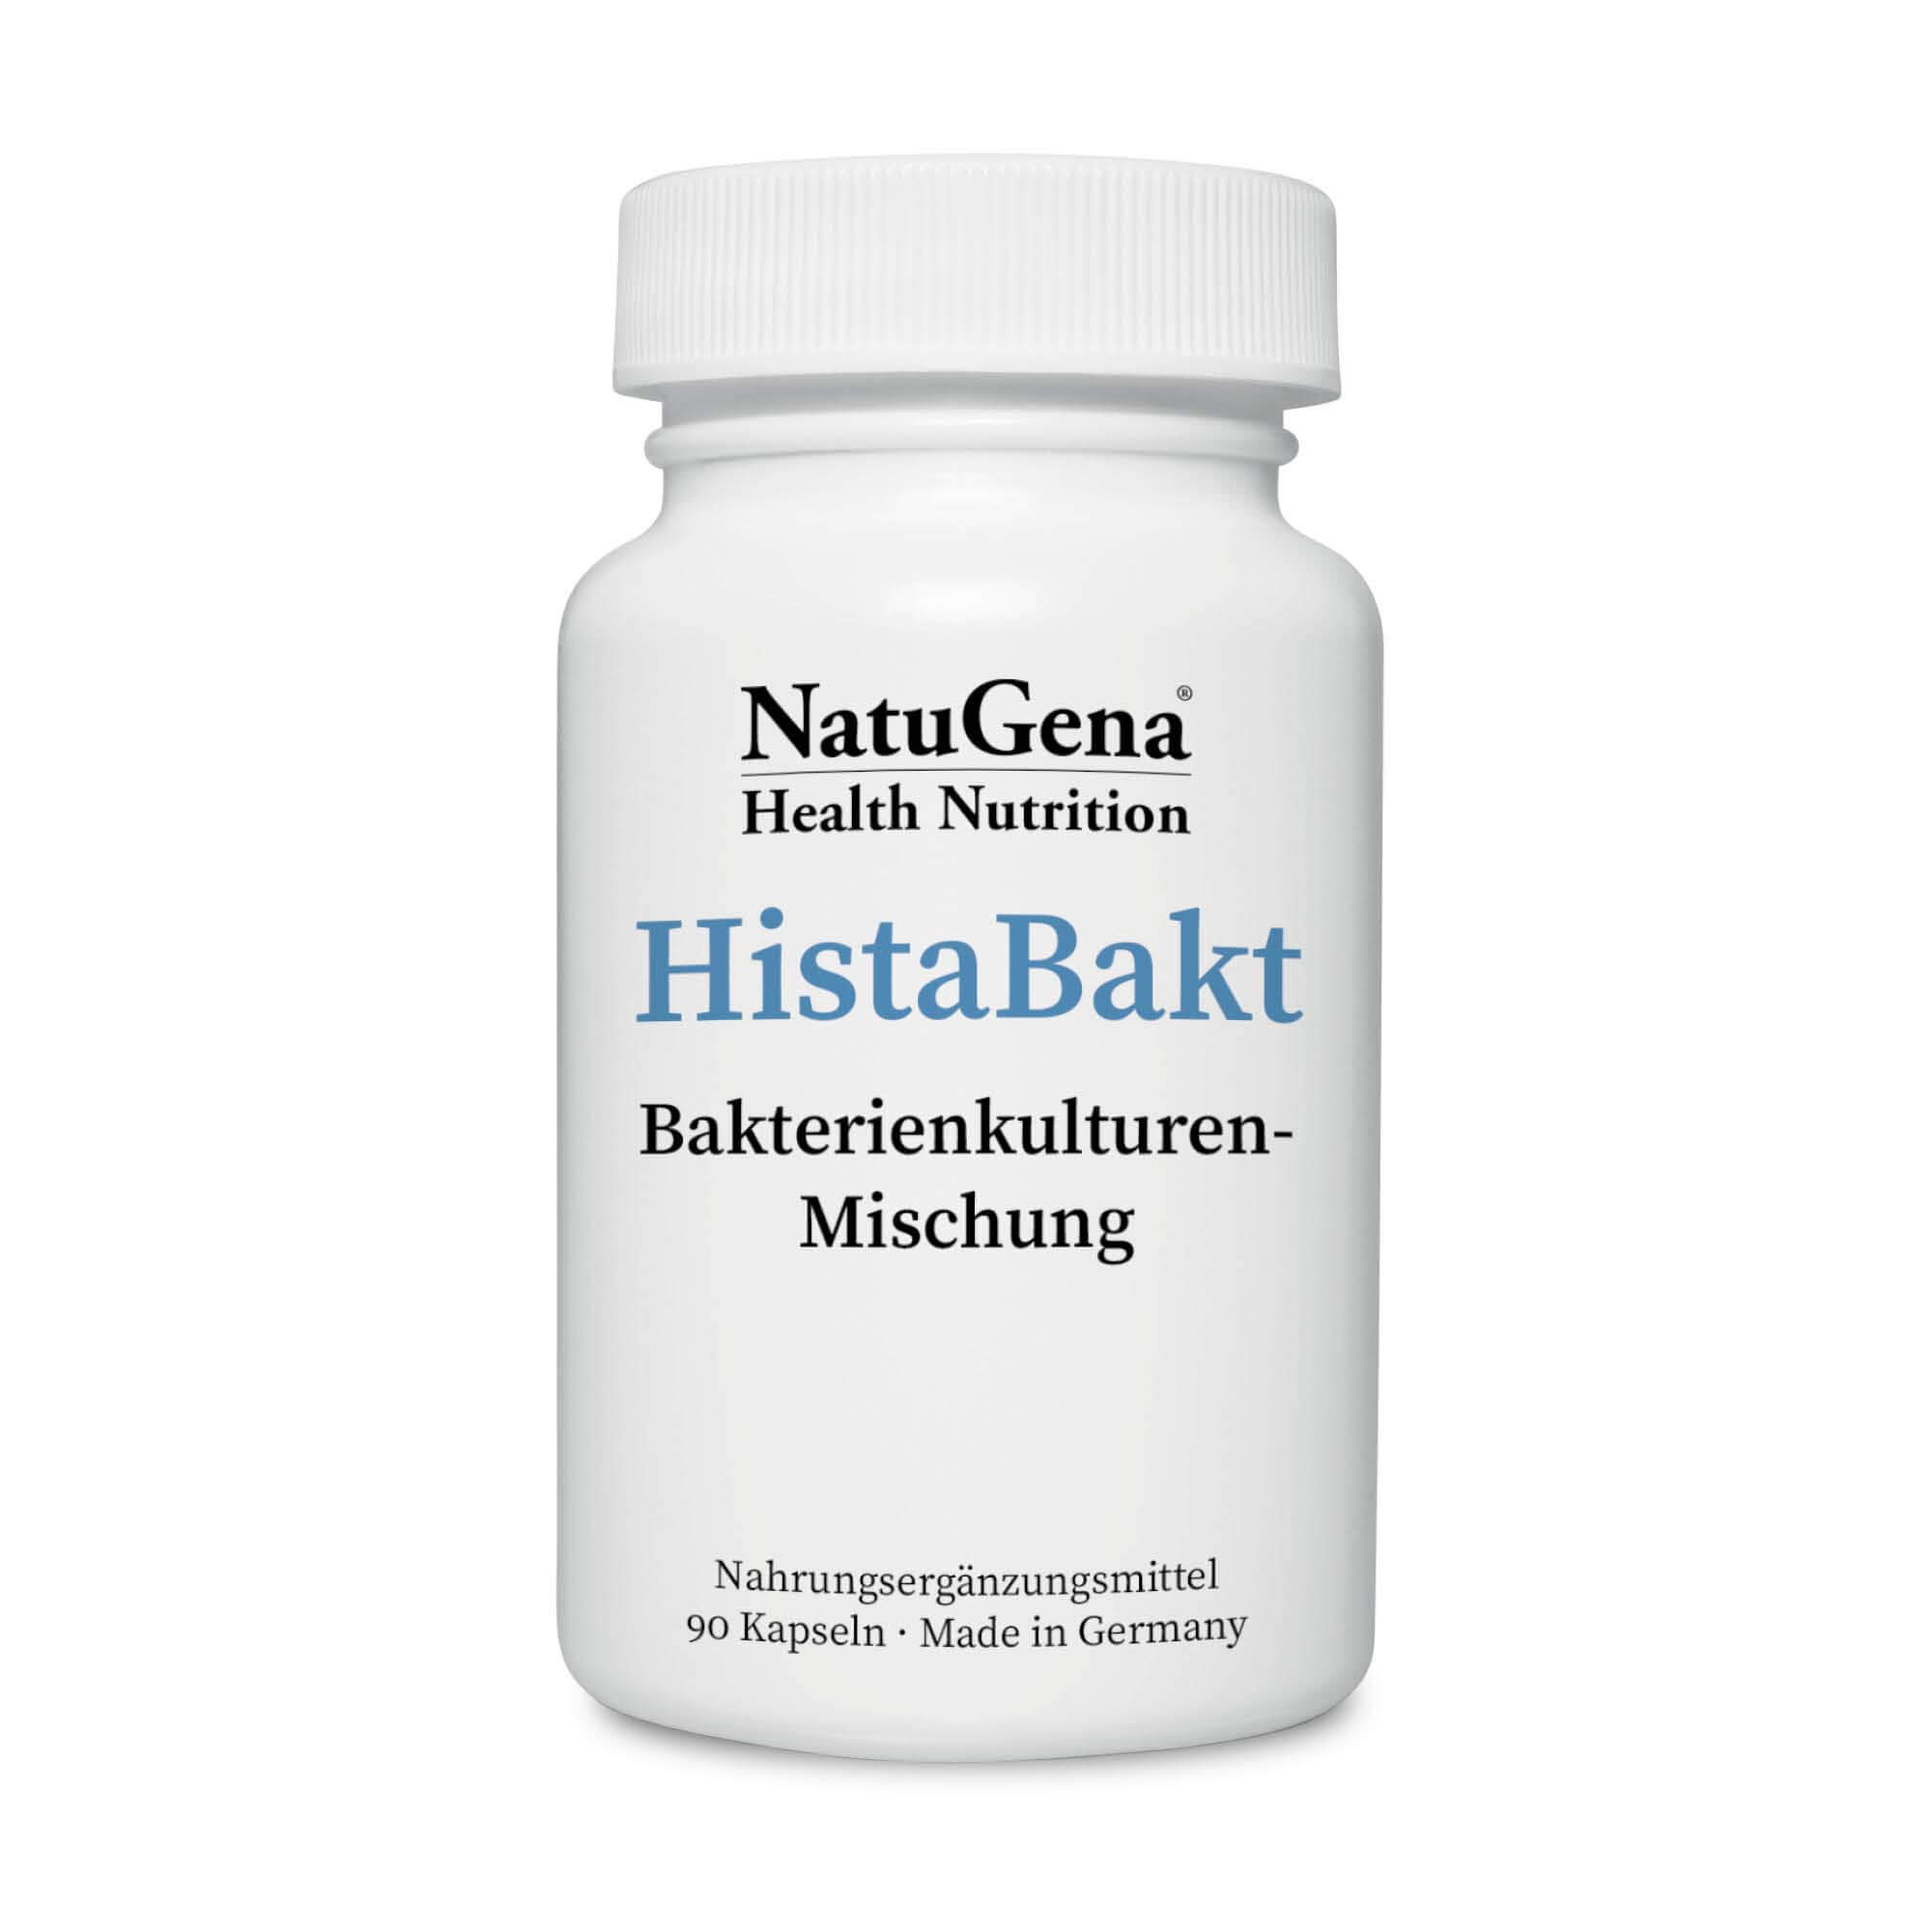 NatuGena HistaBakt | 90 Kapseln | Bakterienkulturen-Mischung